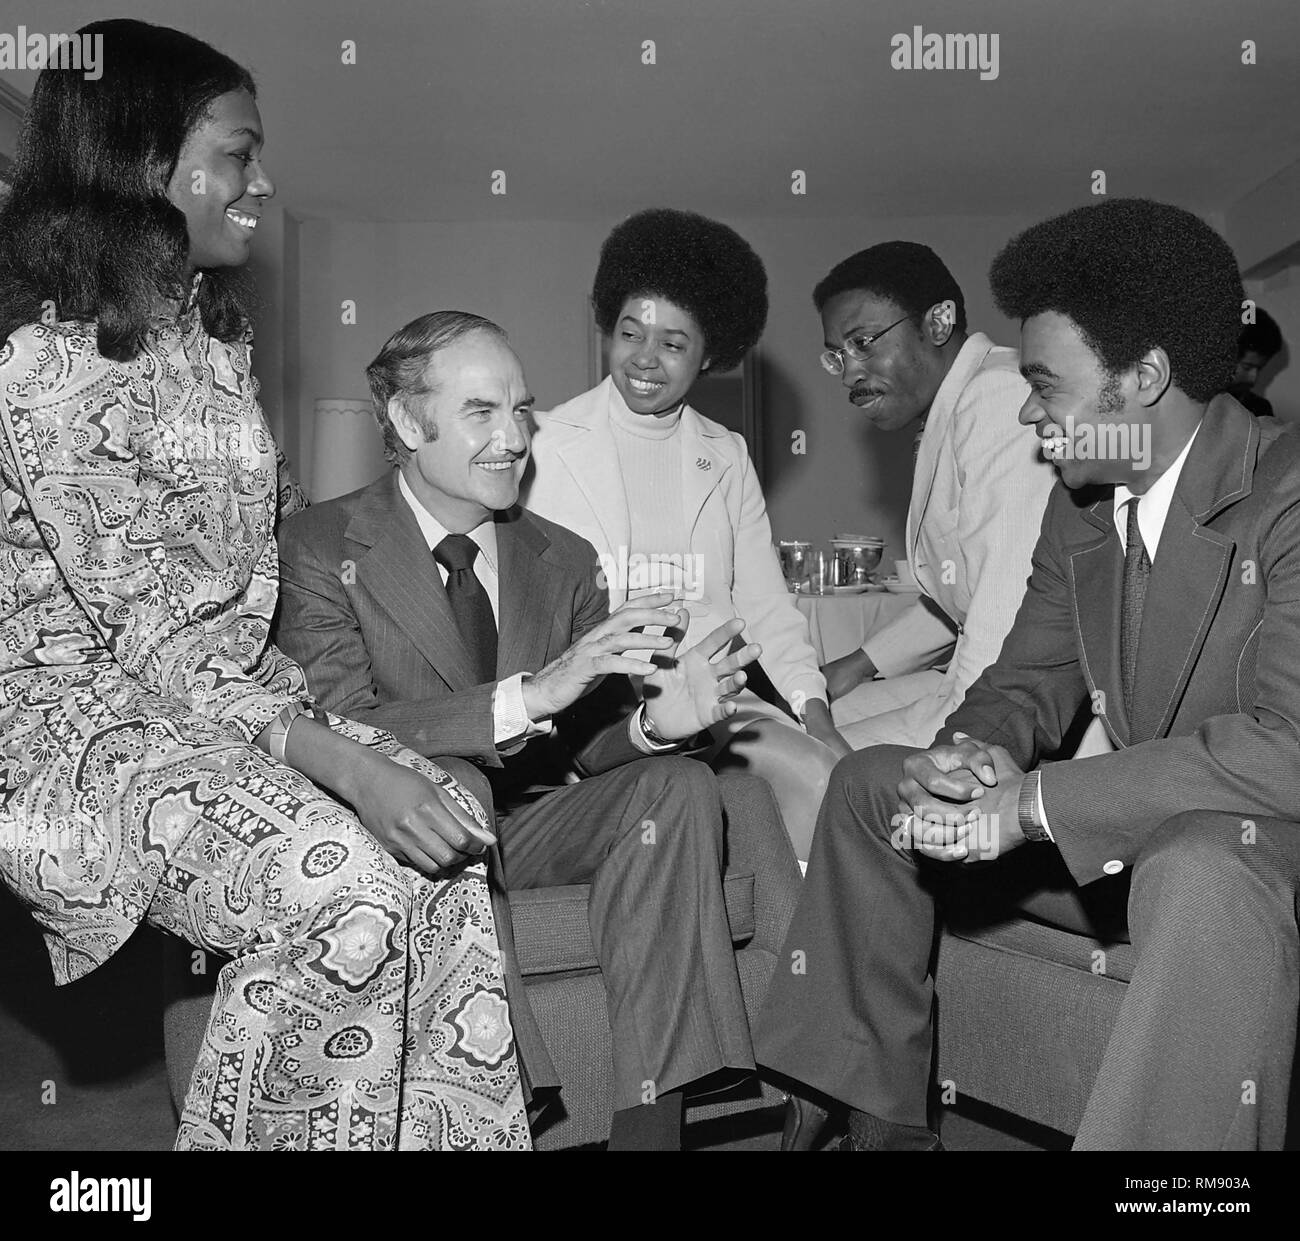 Präsidentschaftskandidat George McGovern trifft sich mit einer Gruppe von afrikanischen amerikanischen Wähler, bevor ein Benefizkonzert im April 15, 1972 Auf dem Forum in Los Angeles mit James Taylor Carole King, Barbra Streisand und Quincy Jones. Stockfoto